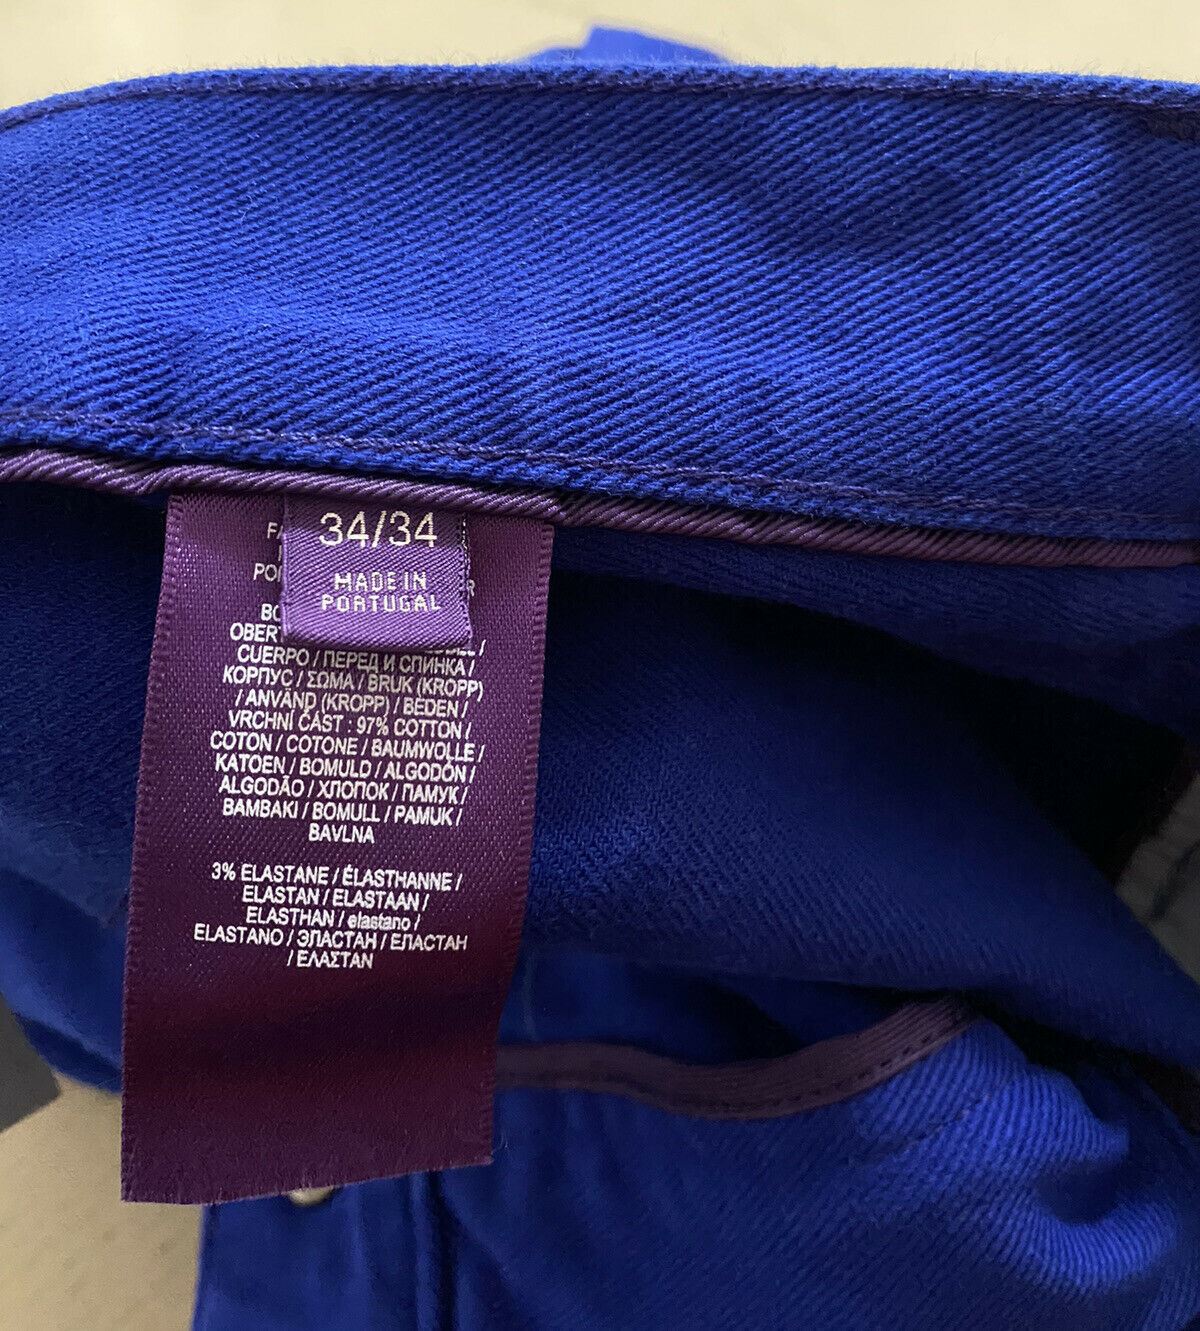 NWT $495 Ralph Lauren Purple Label Men Thompson Slim Jeans Pants Blue 34